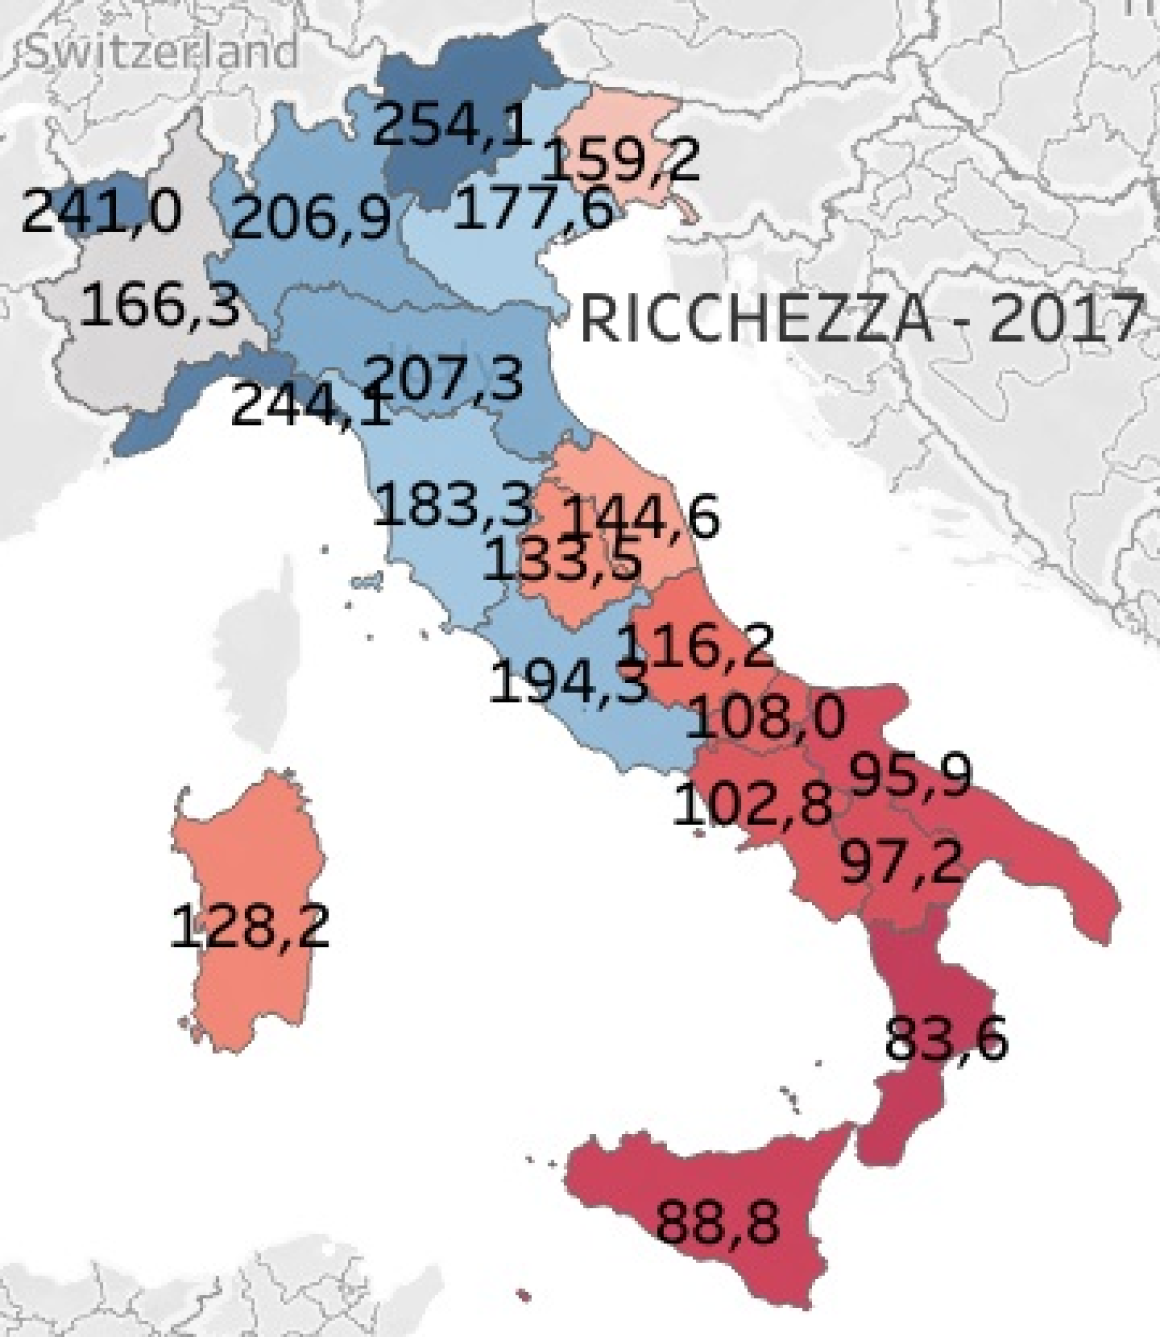 ricchezza-famiglie-2017-italia